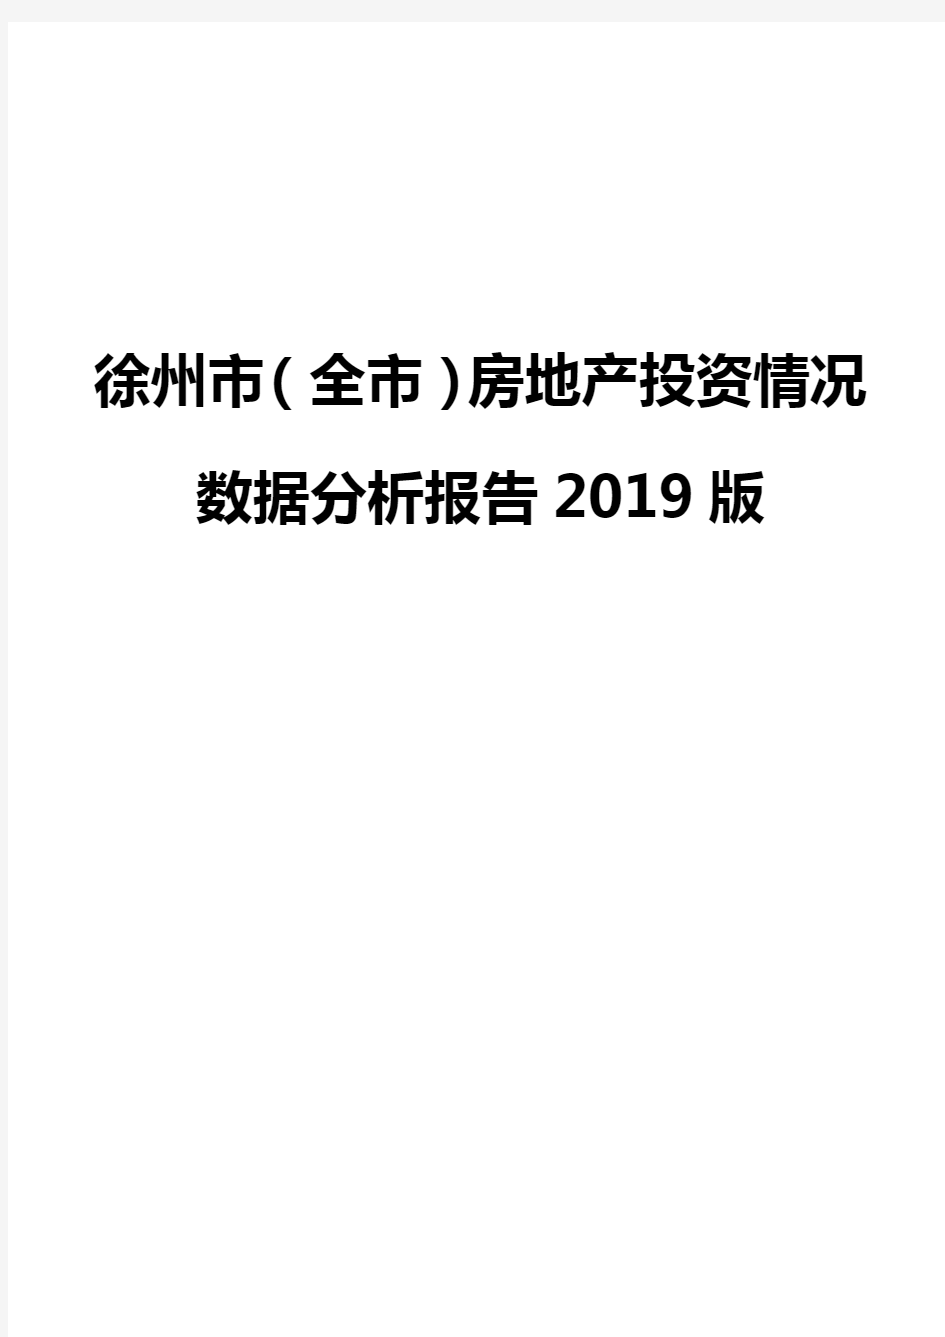 徐州市(全市)房地产投资情况数据分析报告2019版